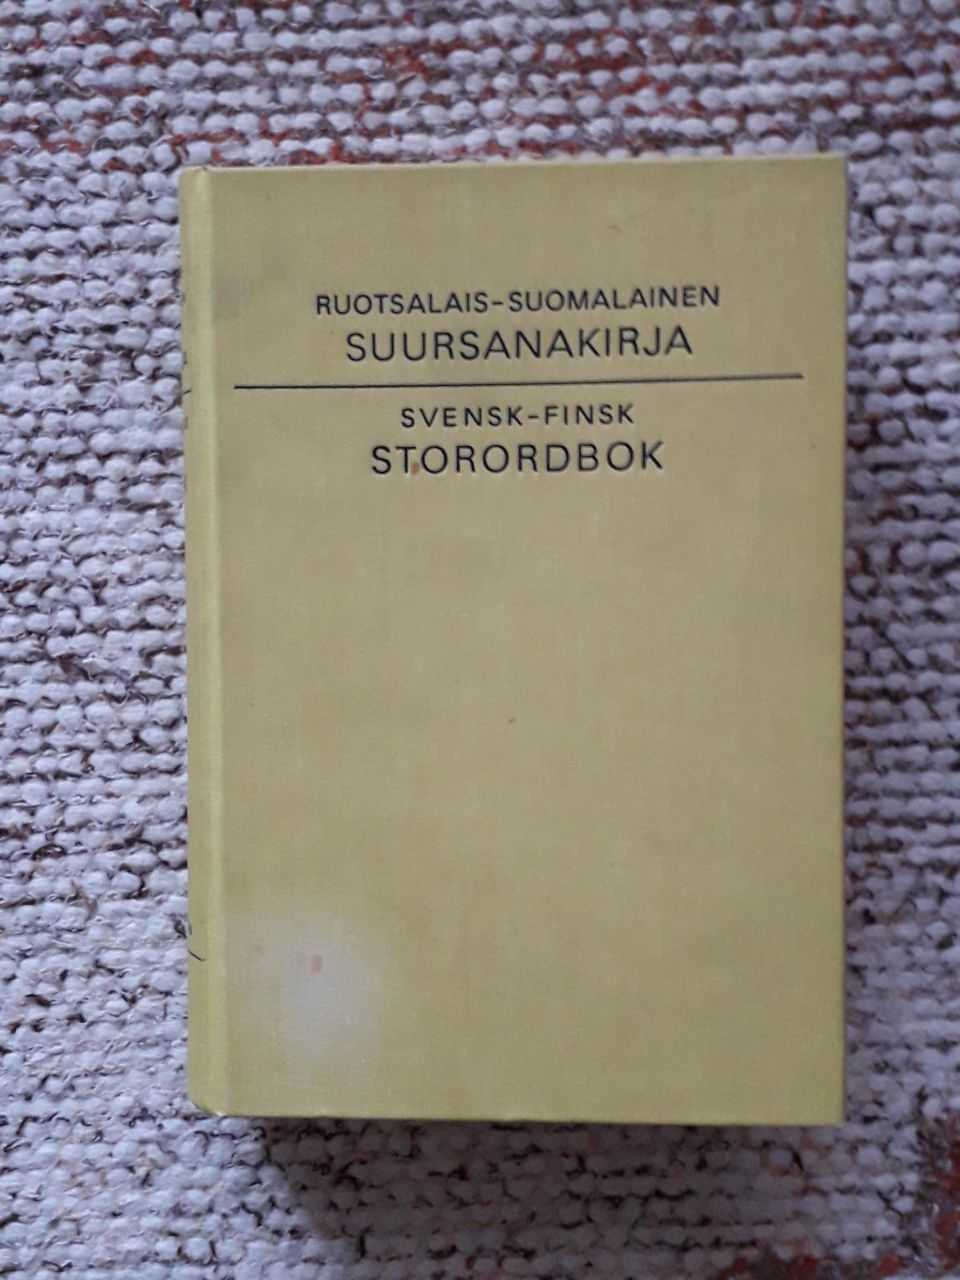 Ruotsalais-suomalainen suursanakirja